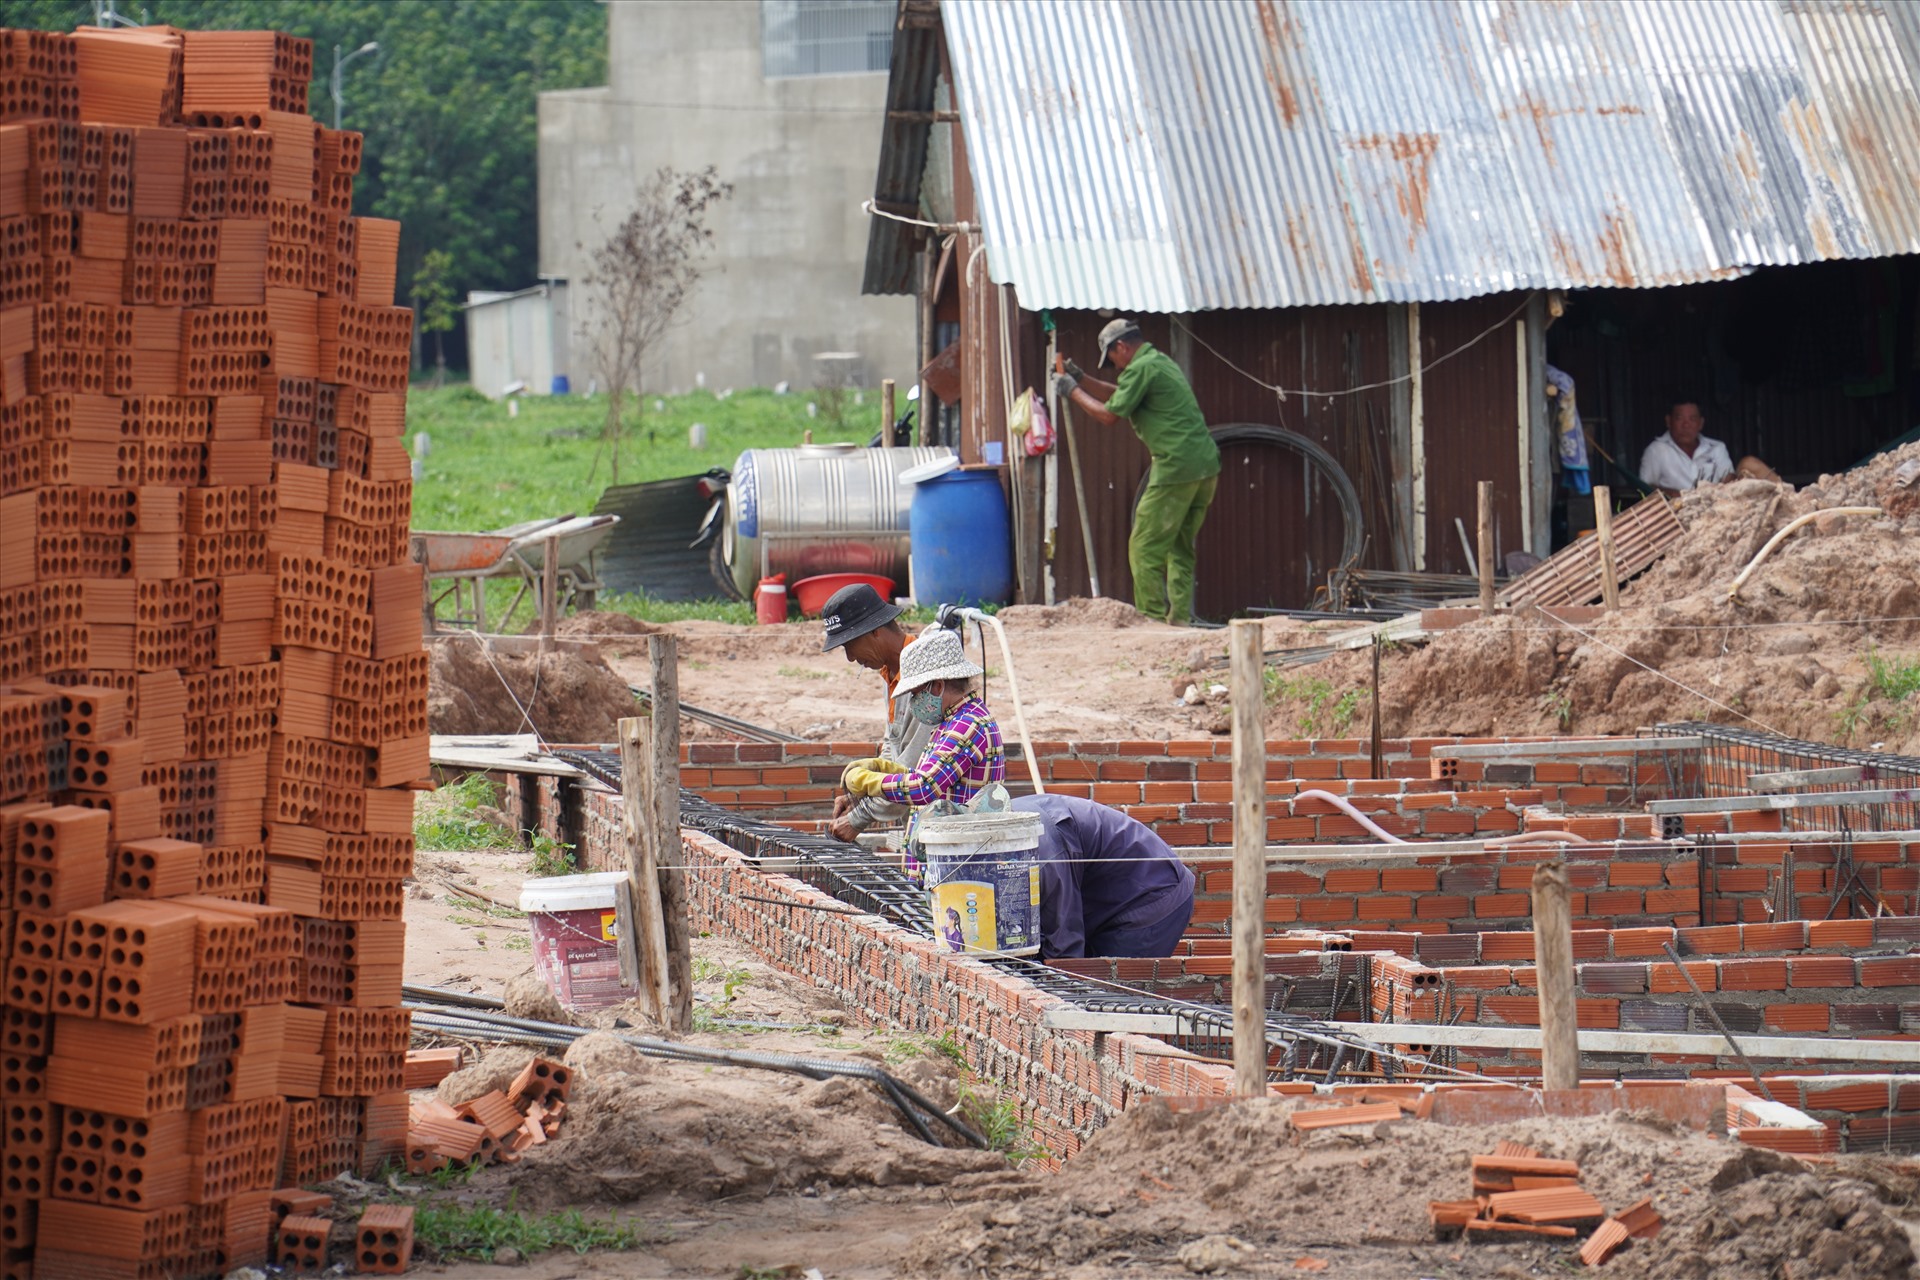 Hiện nay, tại khu tái định cư Lộc An - Bình Sơn, việc xây dựng các công trình hạ tầng kỹ thuật, hạ tầng xã hội đang tiếp tục được hoàn thiện. Bên cạnh đó, người dân tiếp tục về sinh sống ổn định tại đây.